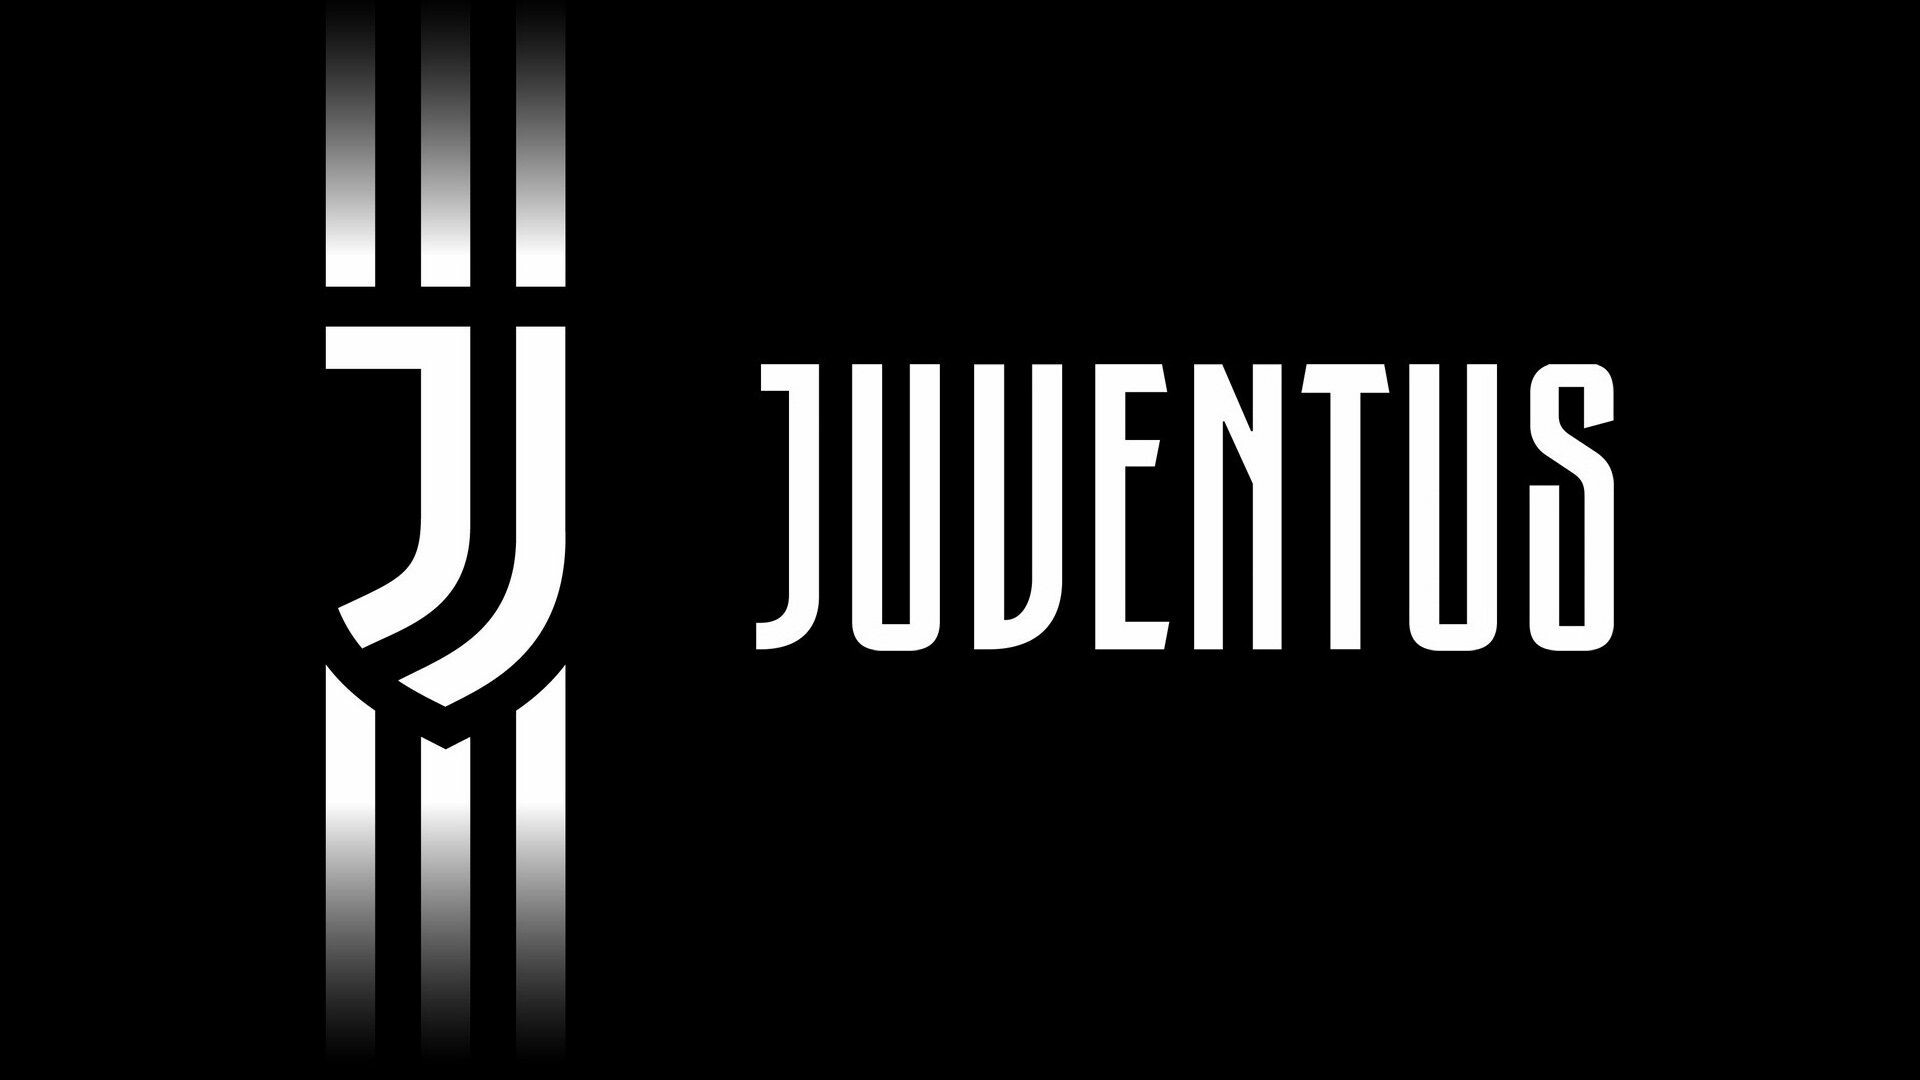 Forza Juve, Juventus logo wallpapers, 4K HD, Eye-catching designs, 1920x1080 Full HD Desktop